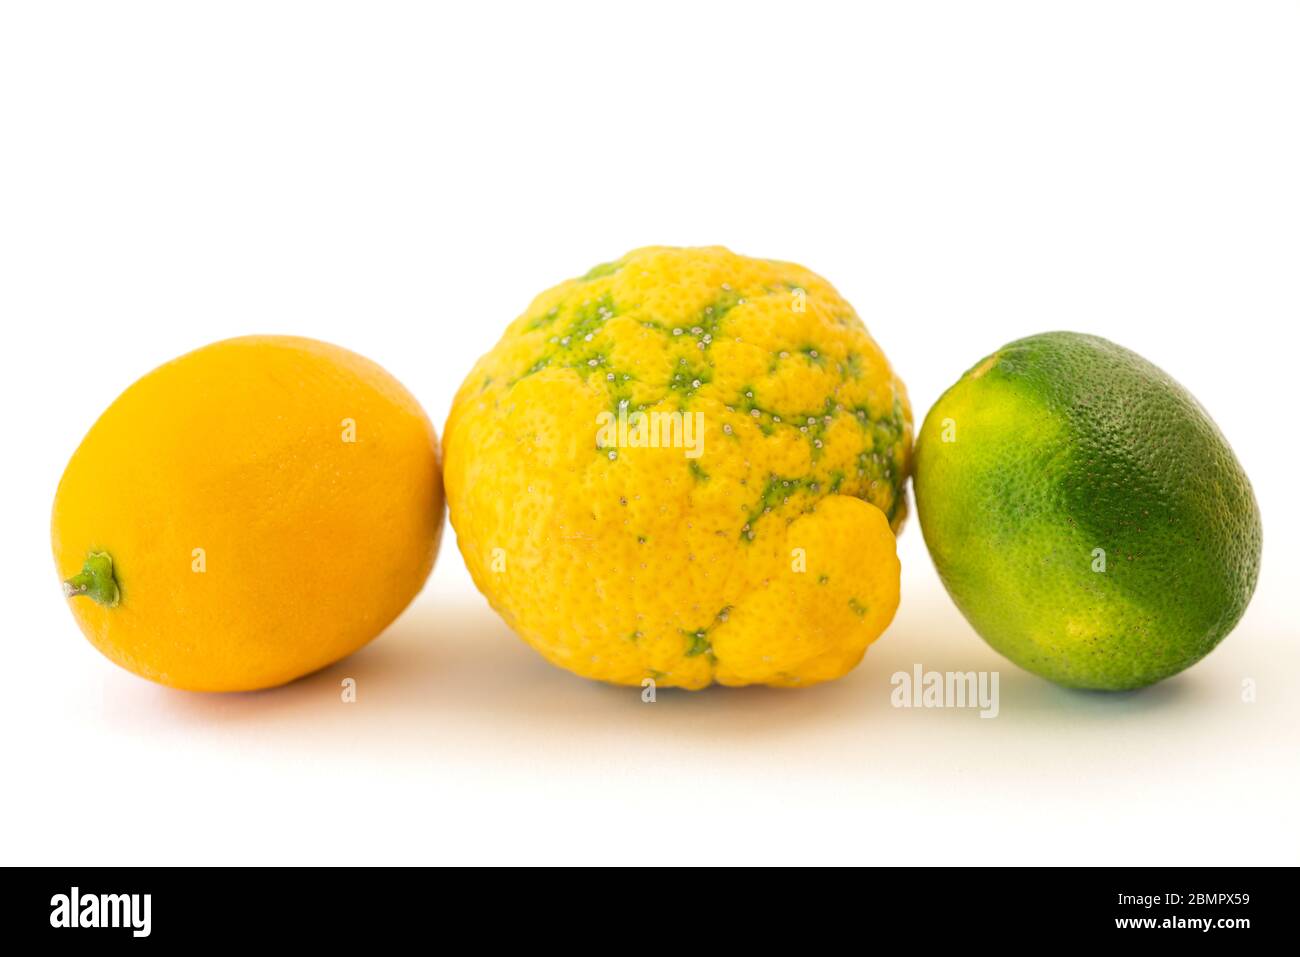 Lemon, lime, Bush lemon close up. Fresh ripe organic fruits isolated on white background Stock Photo